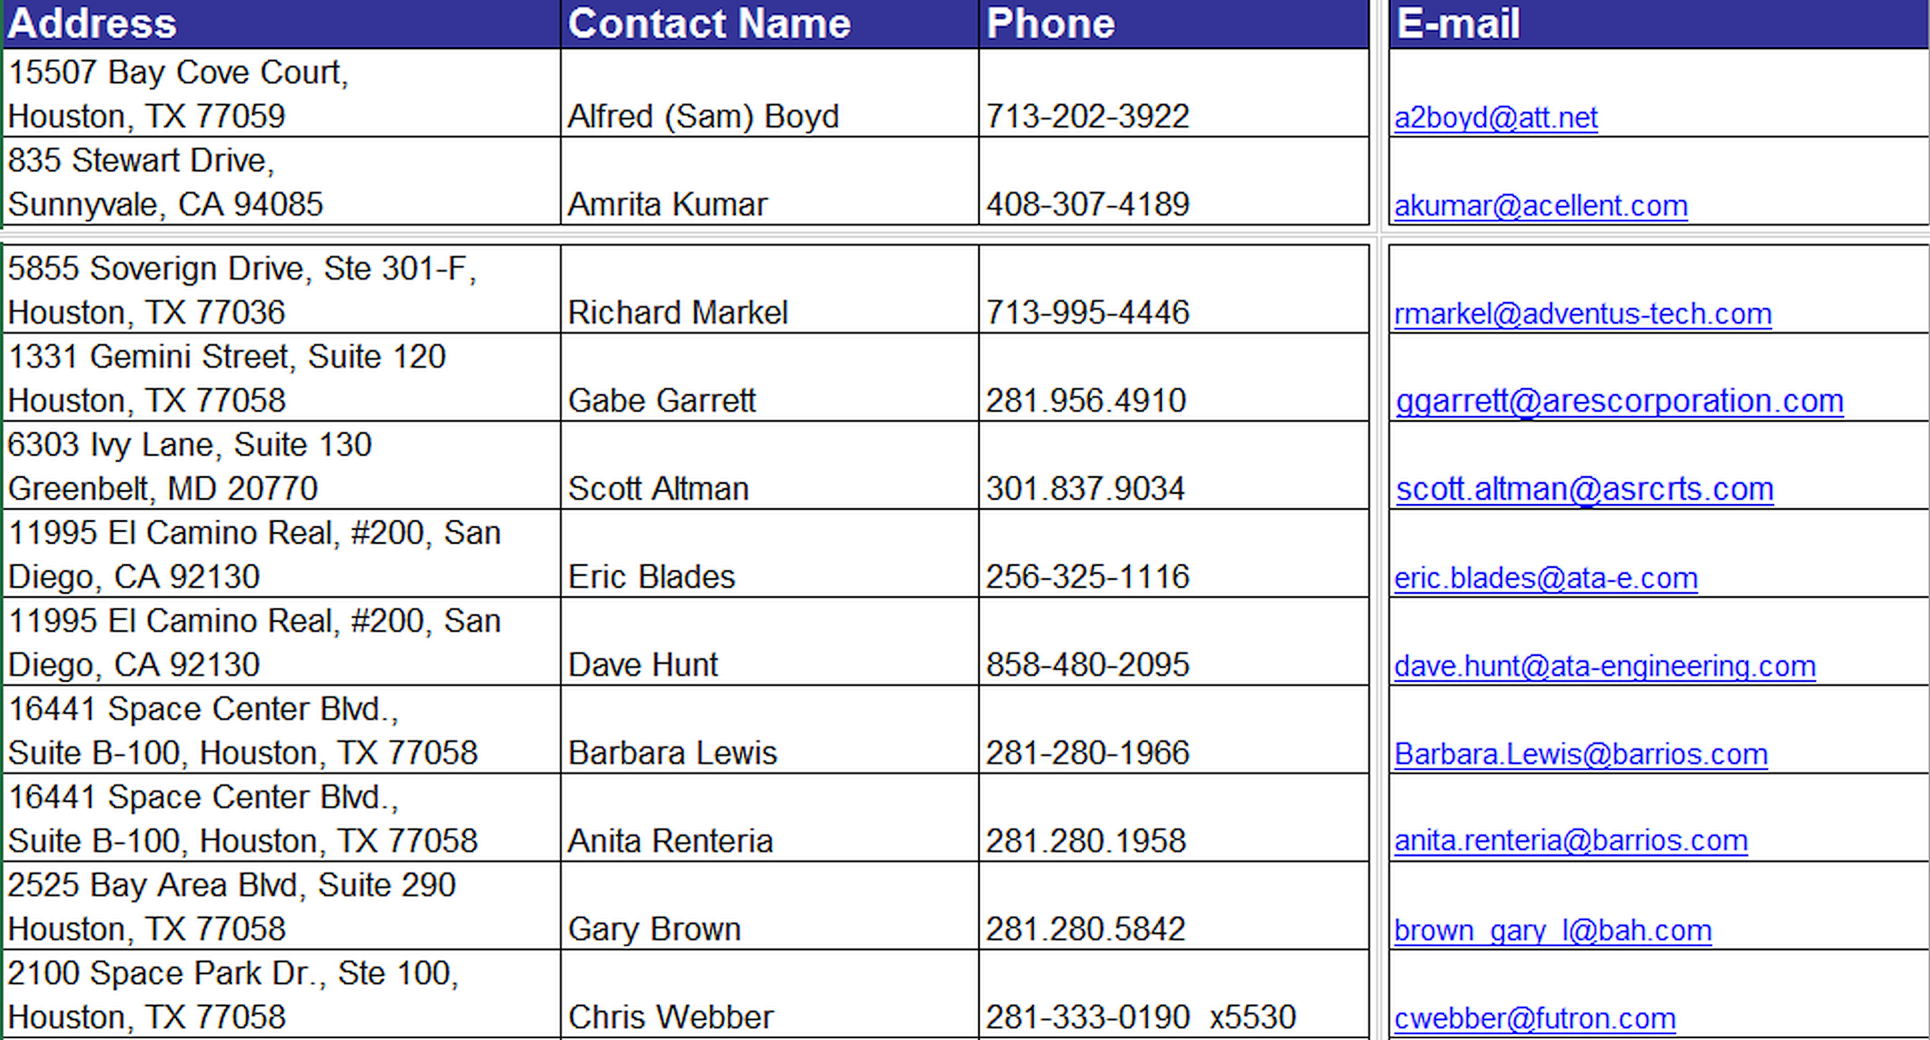 Адреса и телефоны ключевых сотрудников NASA в файле Excel